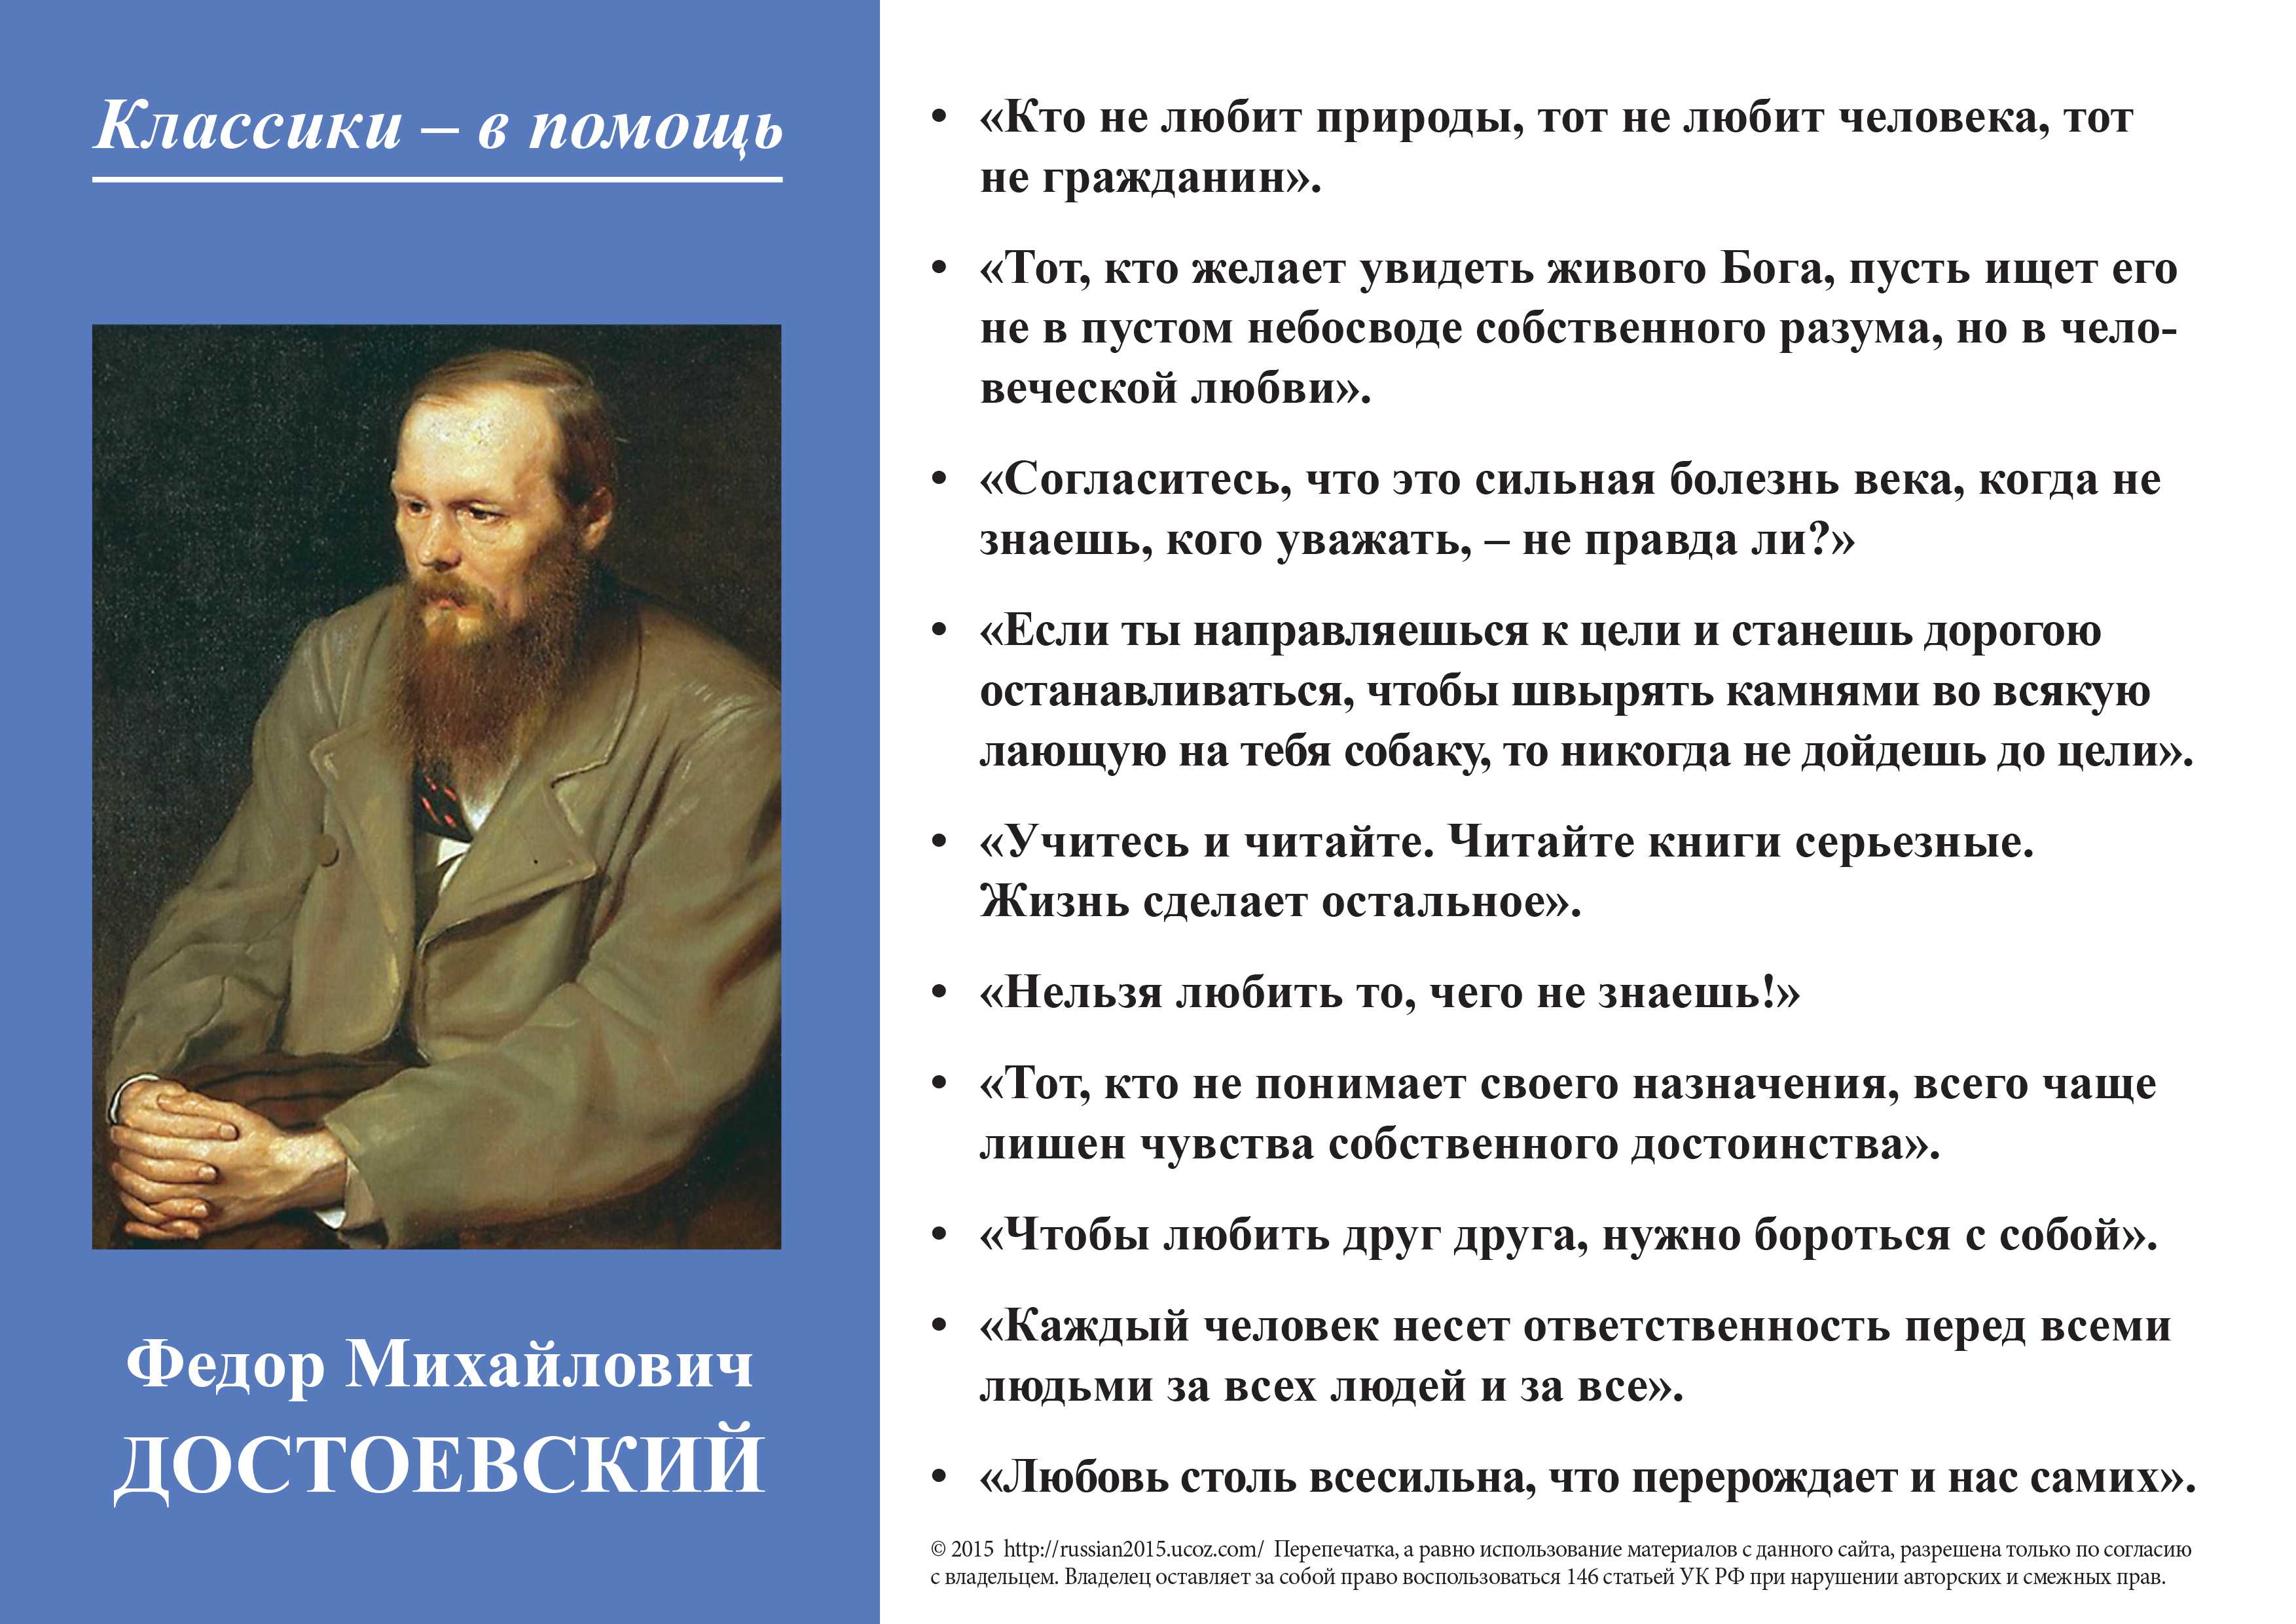 Достоевский, фёдор михайлович